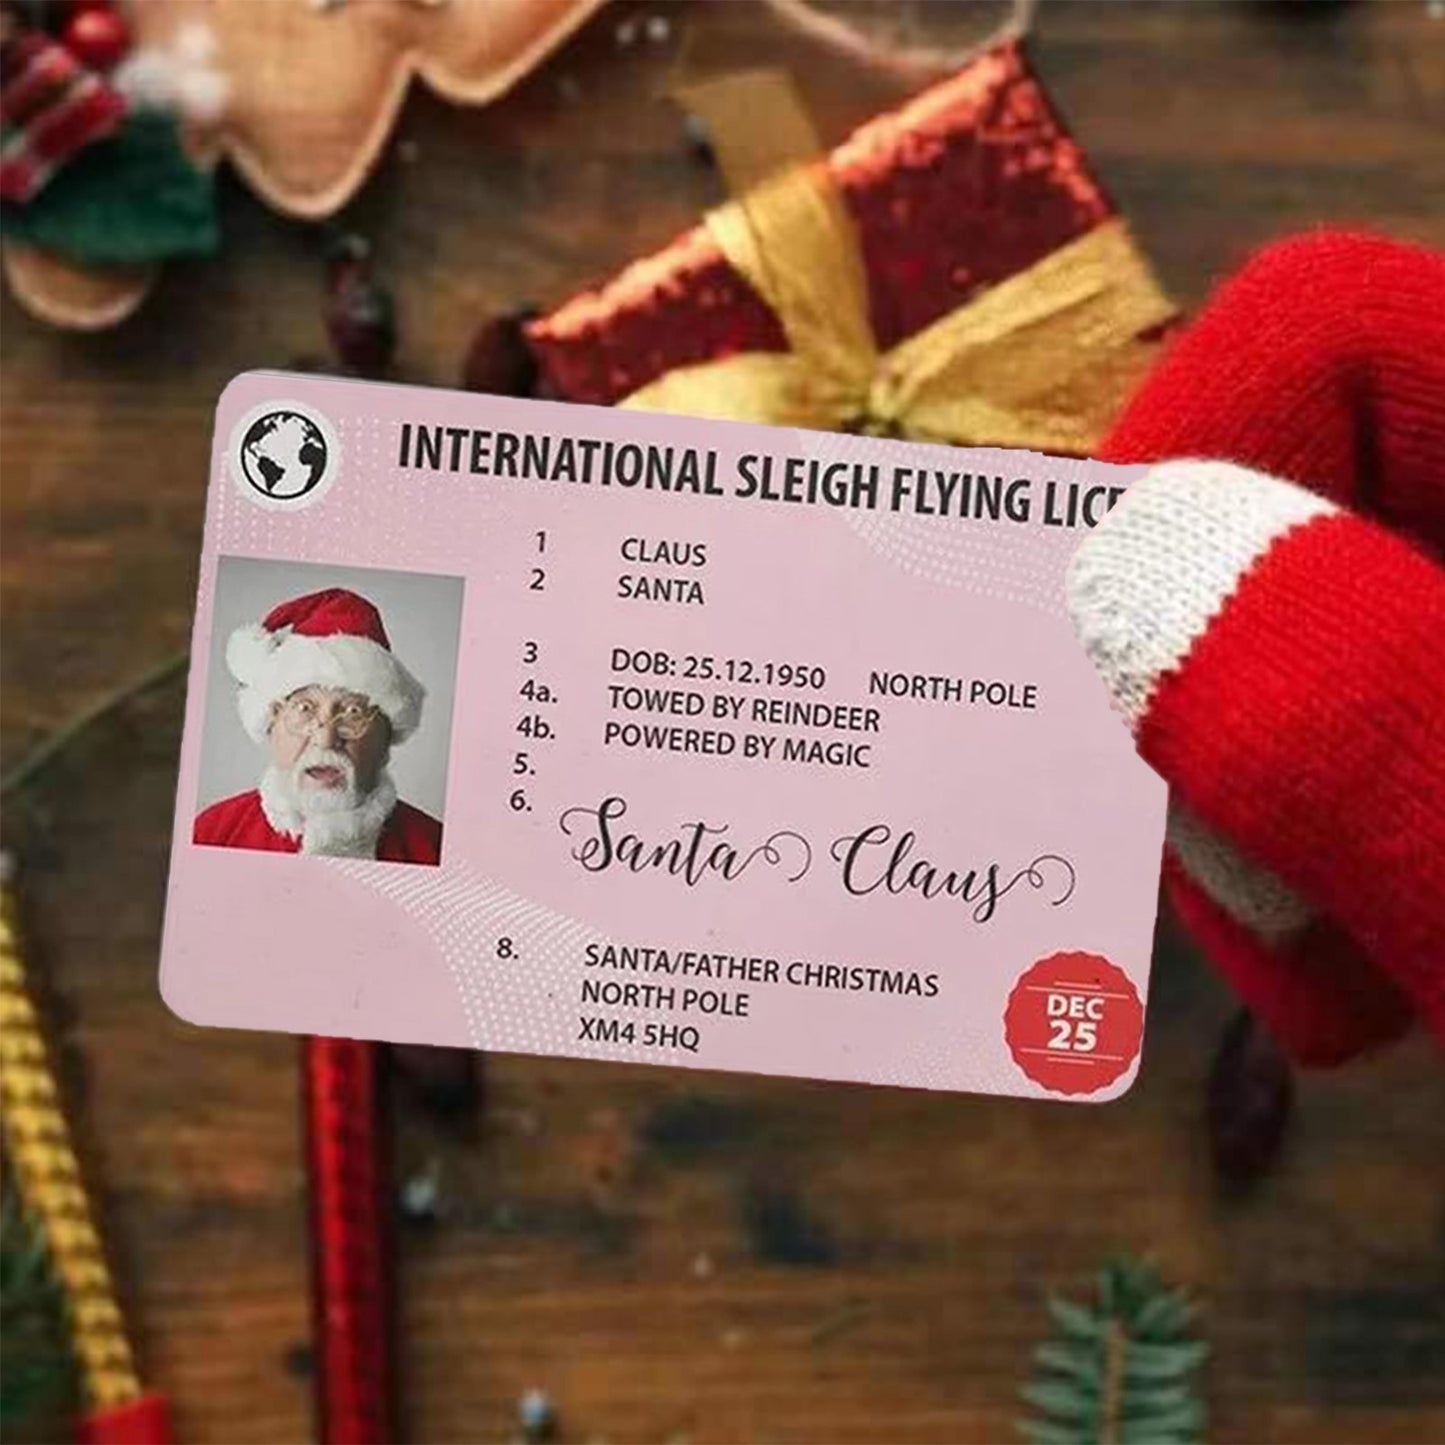 10Pcs Creative Santa Claus Flying License